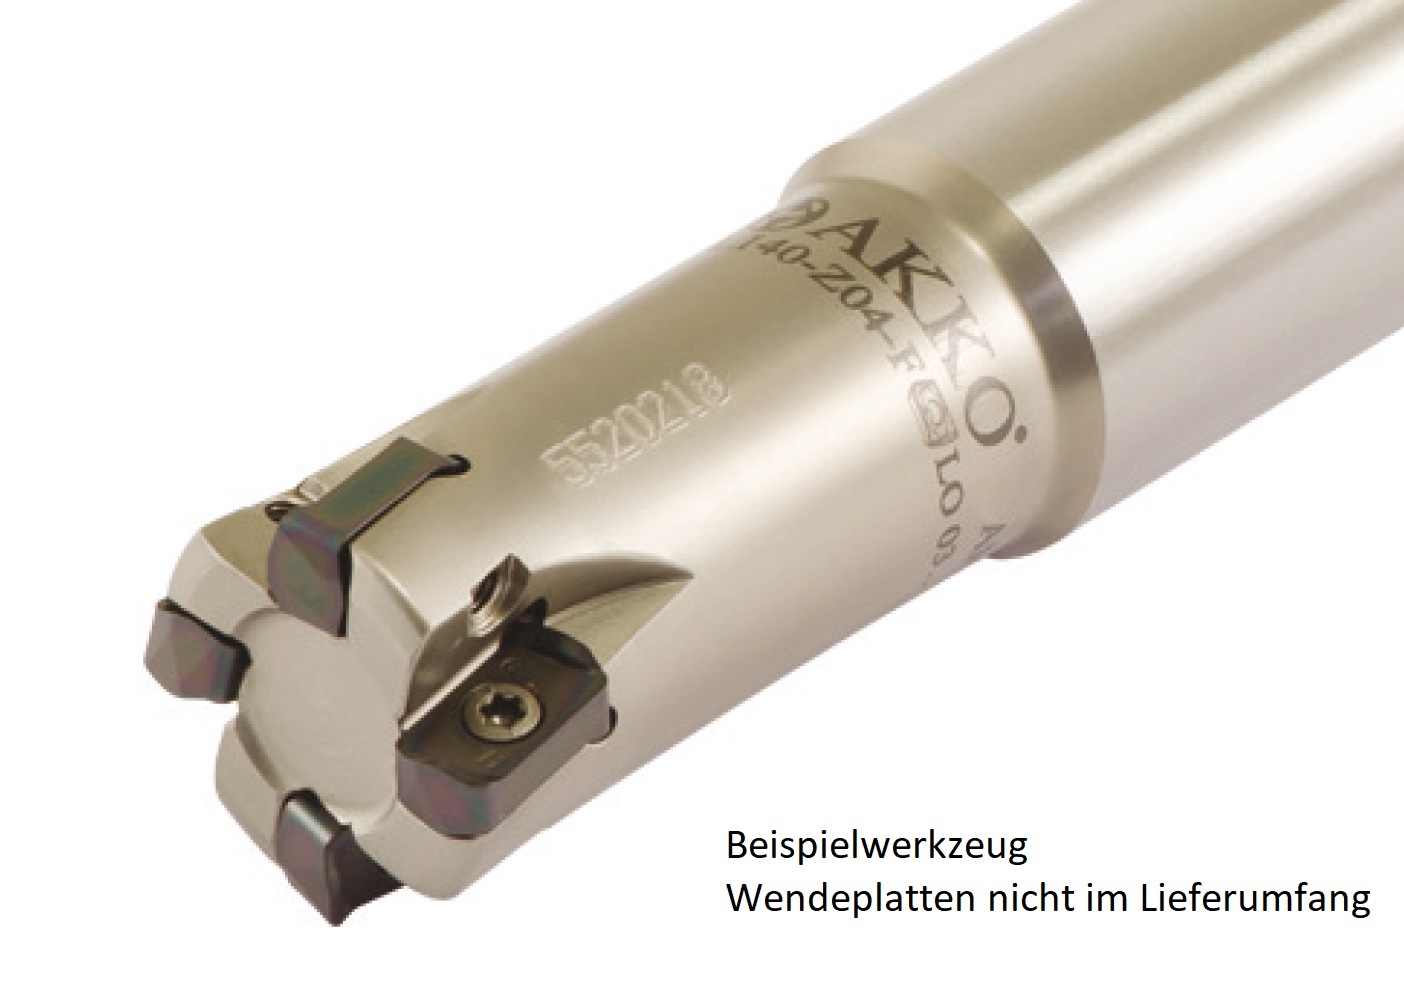 AKKO-Hochvorschub-Schaftfräser ø 16 mm für Wendeplatten, kompatibel mit Kyocera LOGU 0303....
Schaft-ø 15, ohne Innenkühlung, Z=2